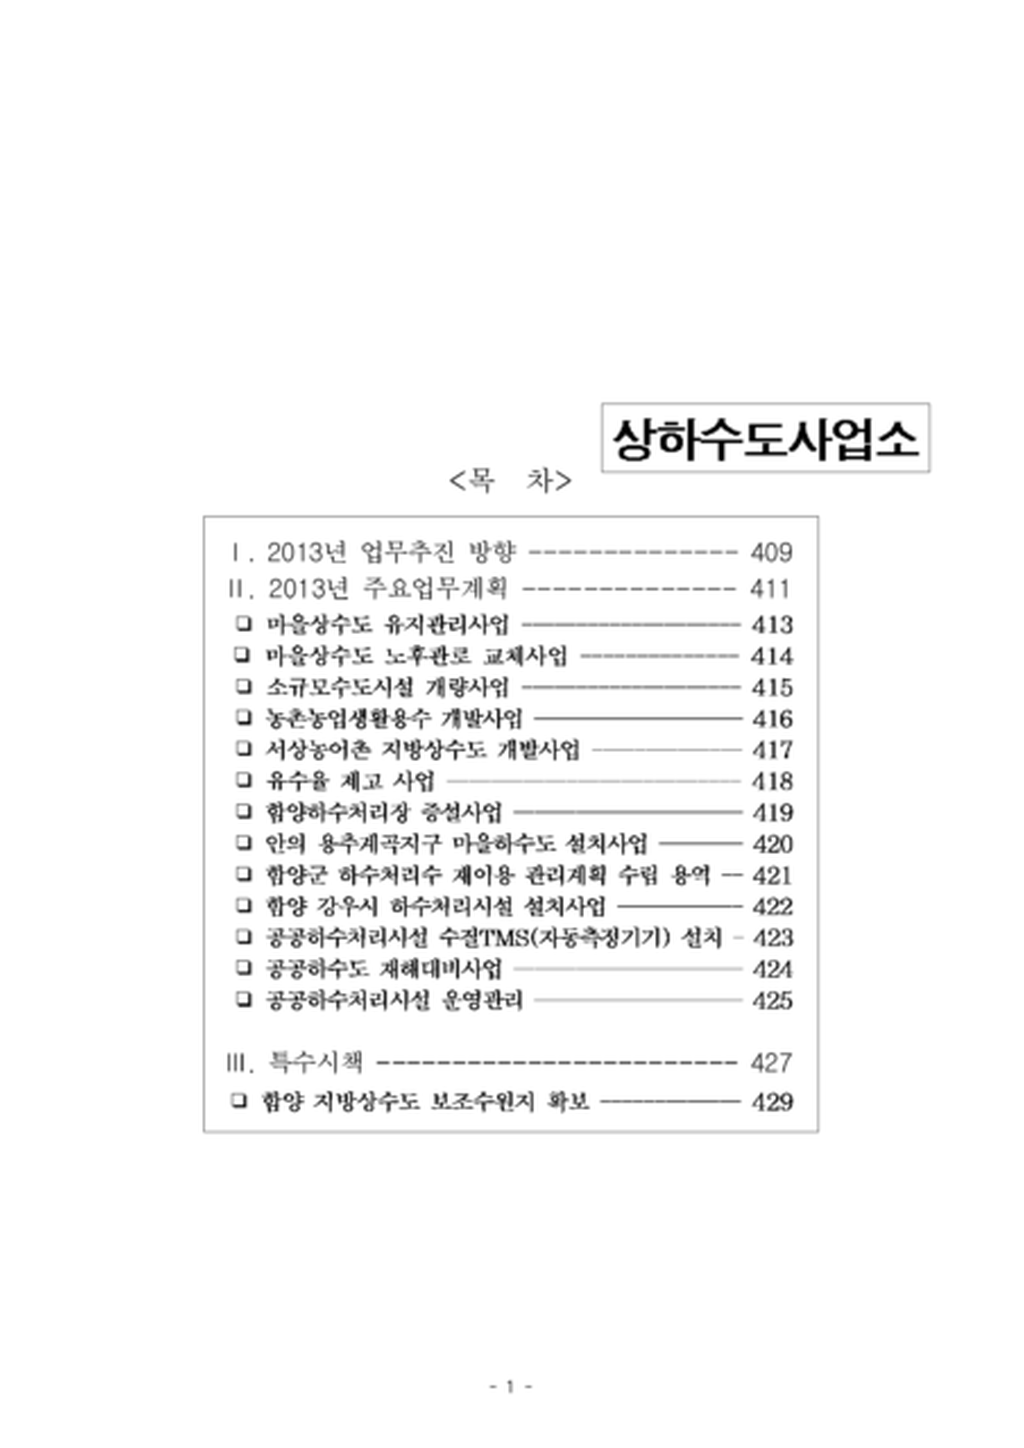 2013 군정 주요업무보고(상하수도사업소)